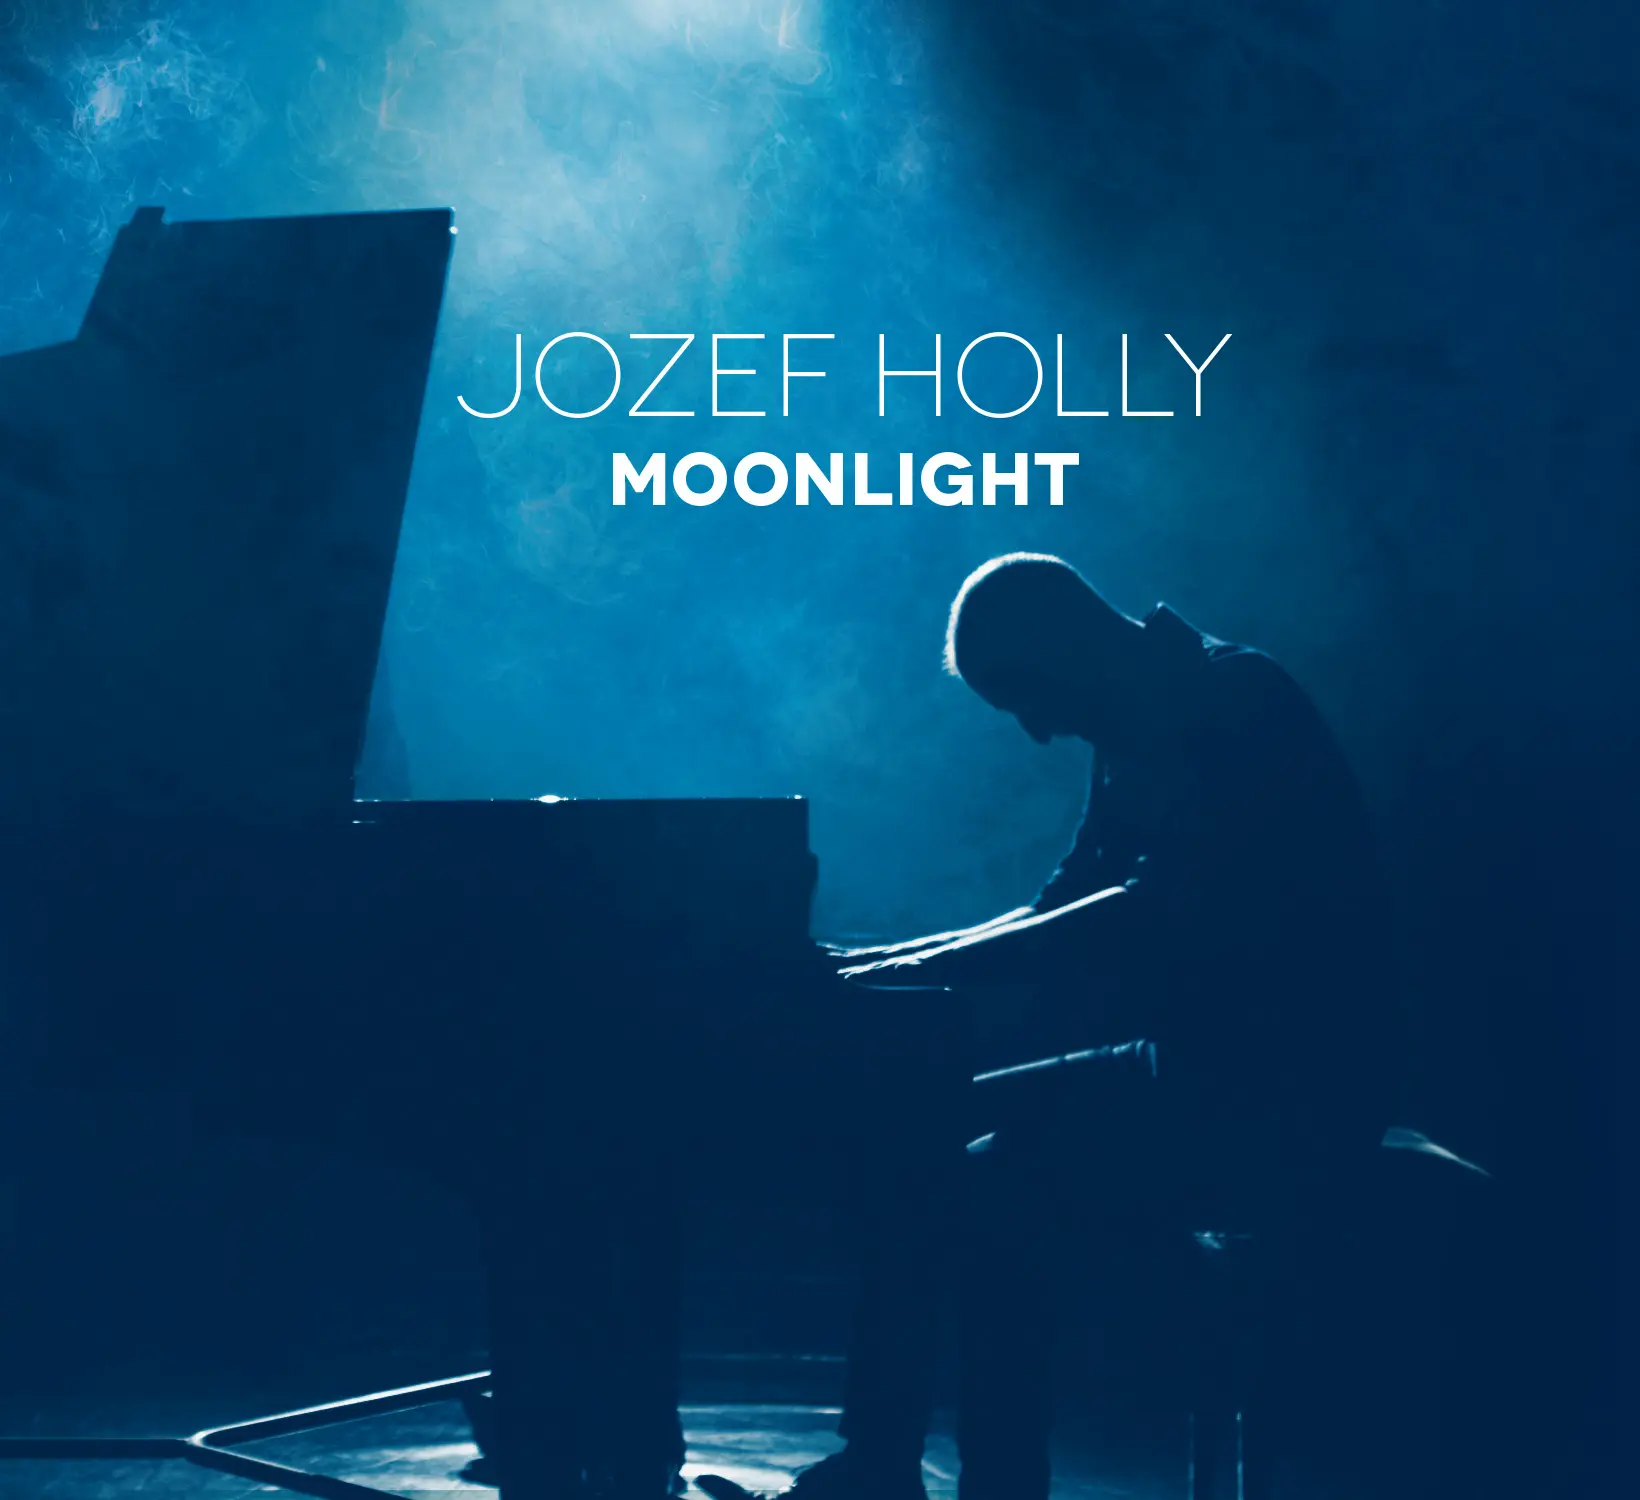 Moonlight album od Jozefa Holleho